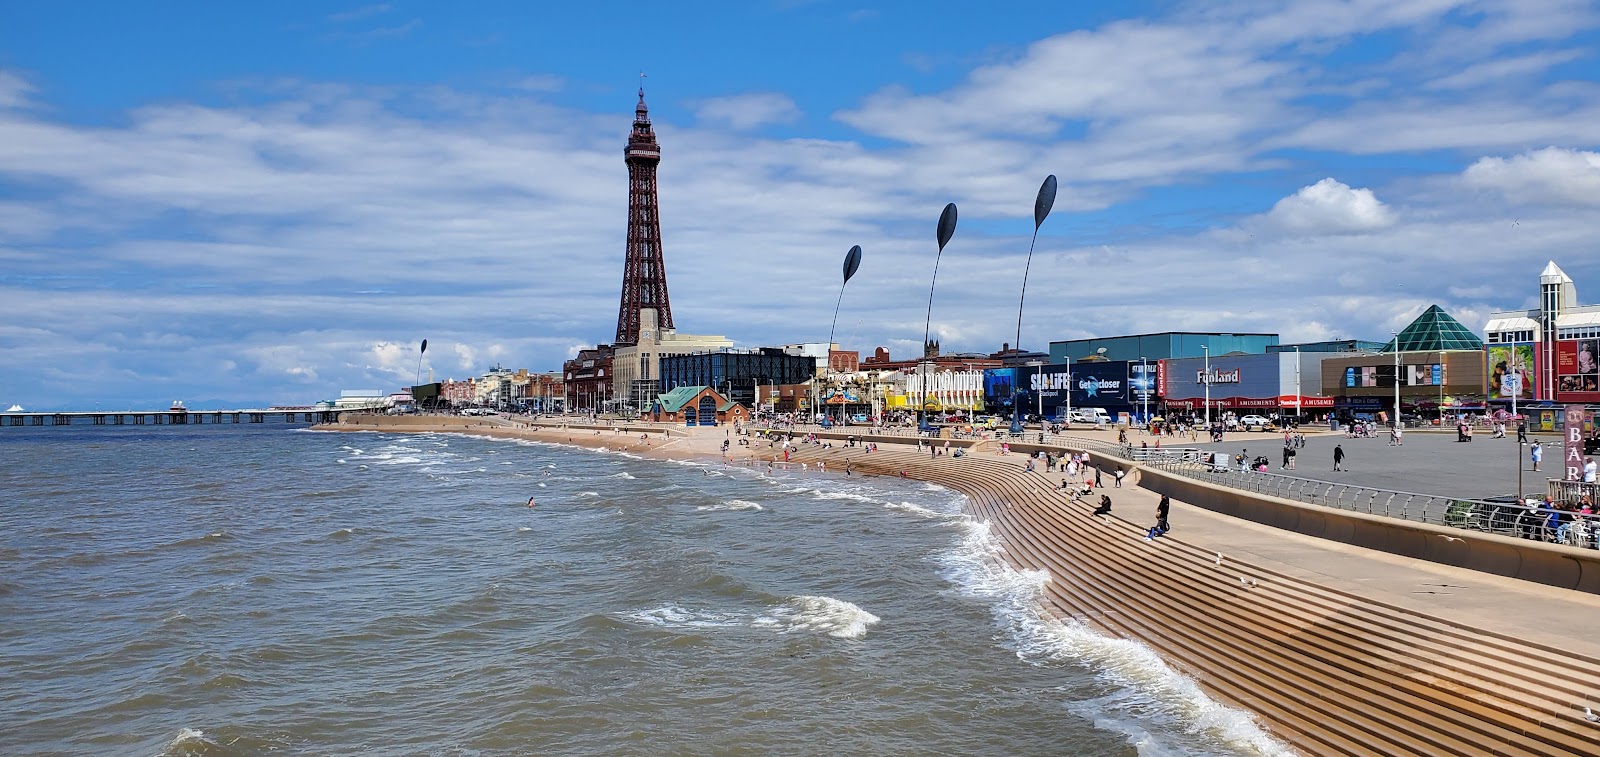 Foto av Blackpool Beach med grå sand yta